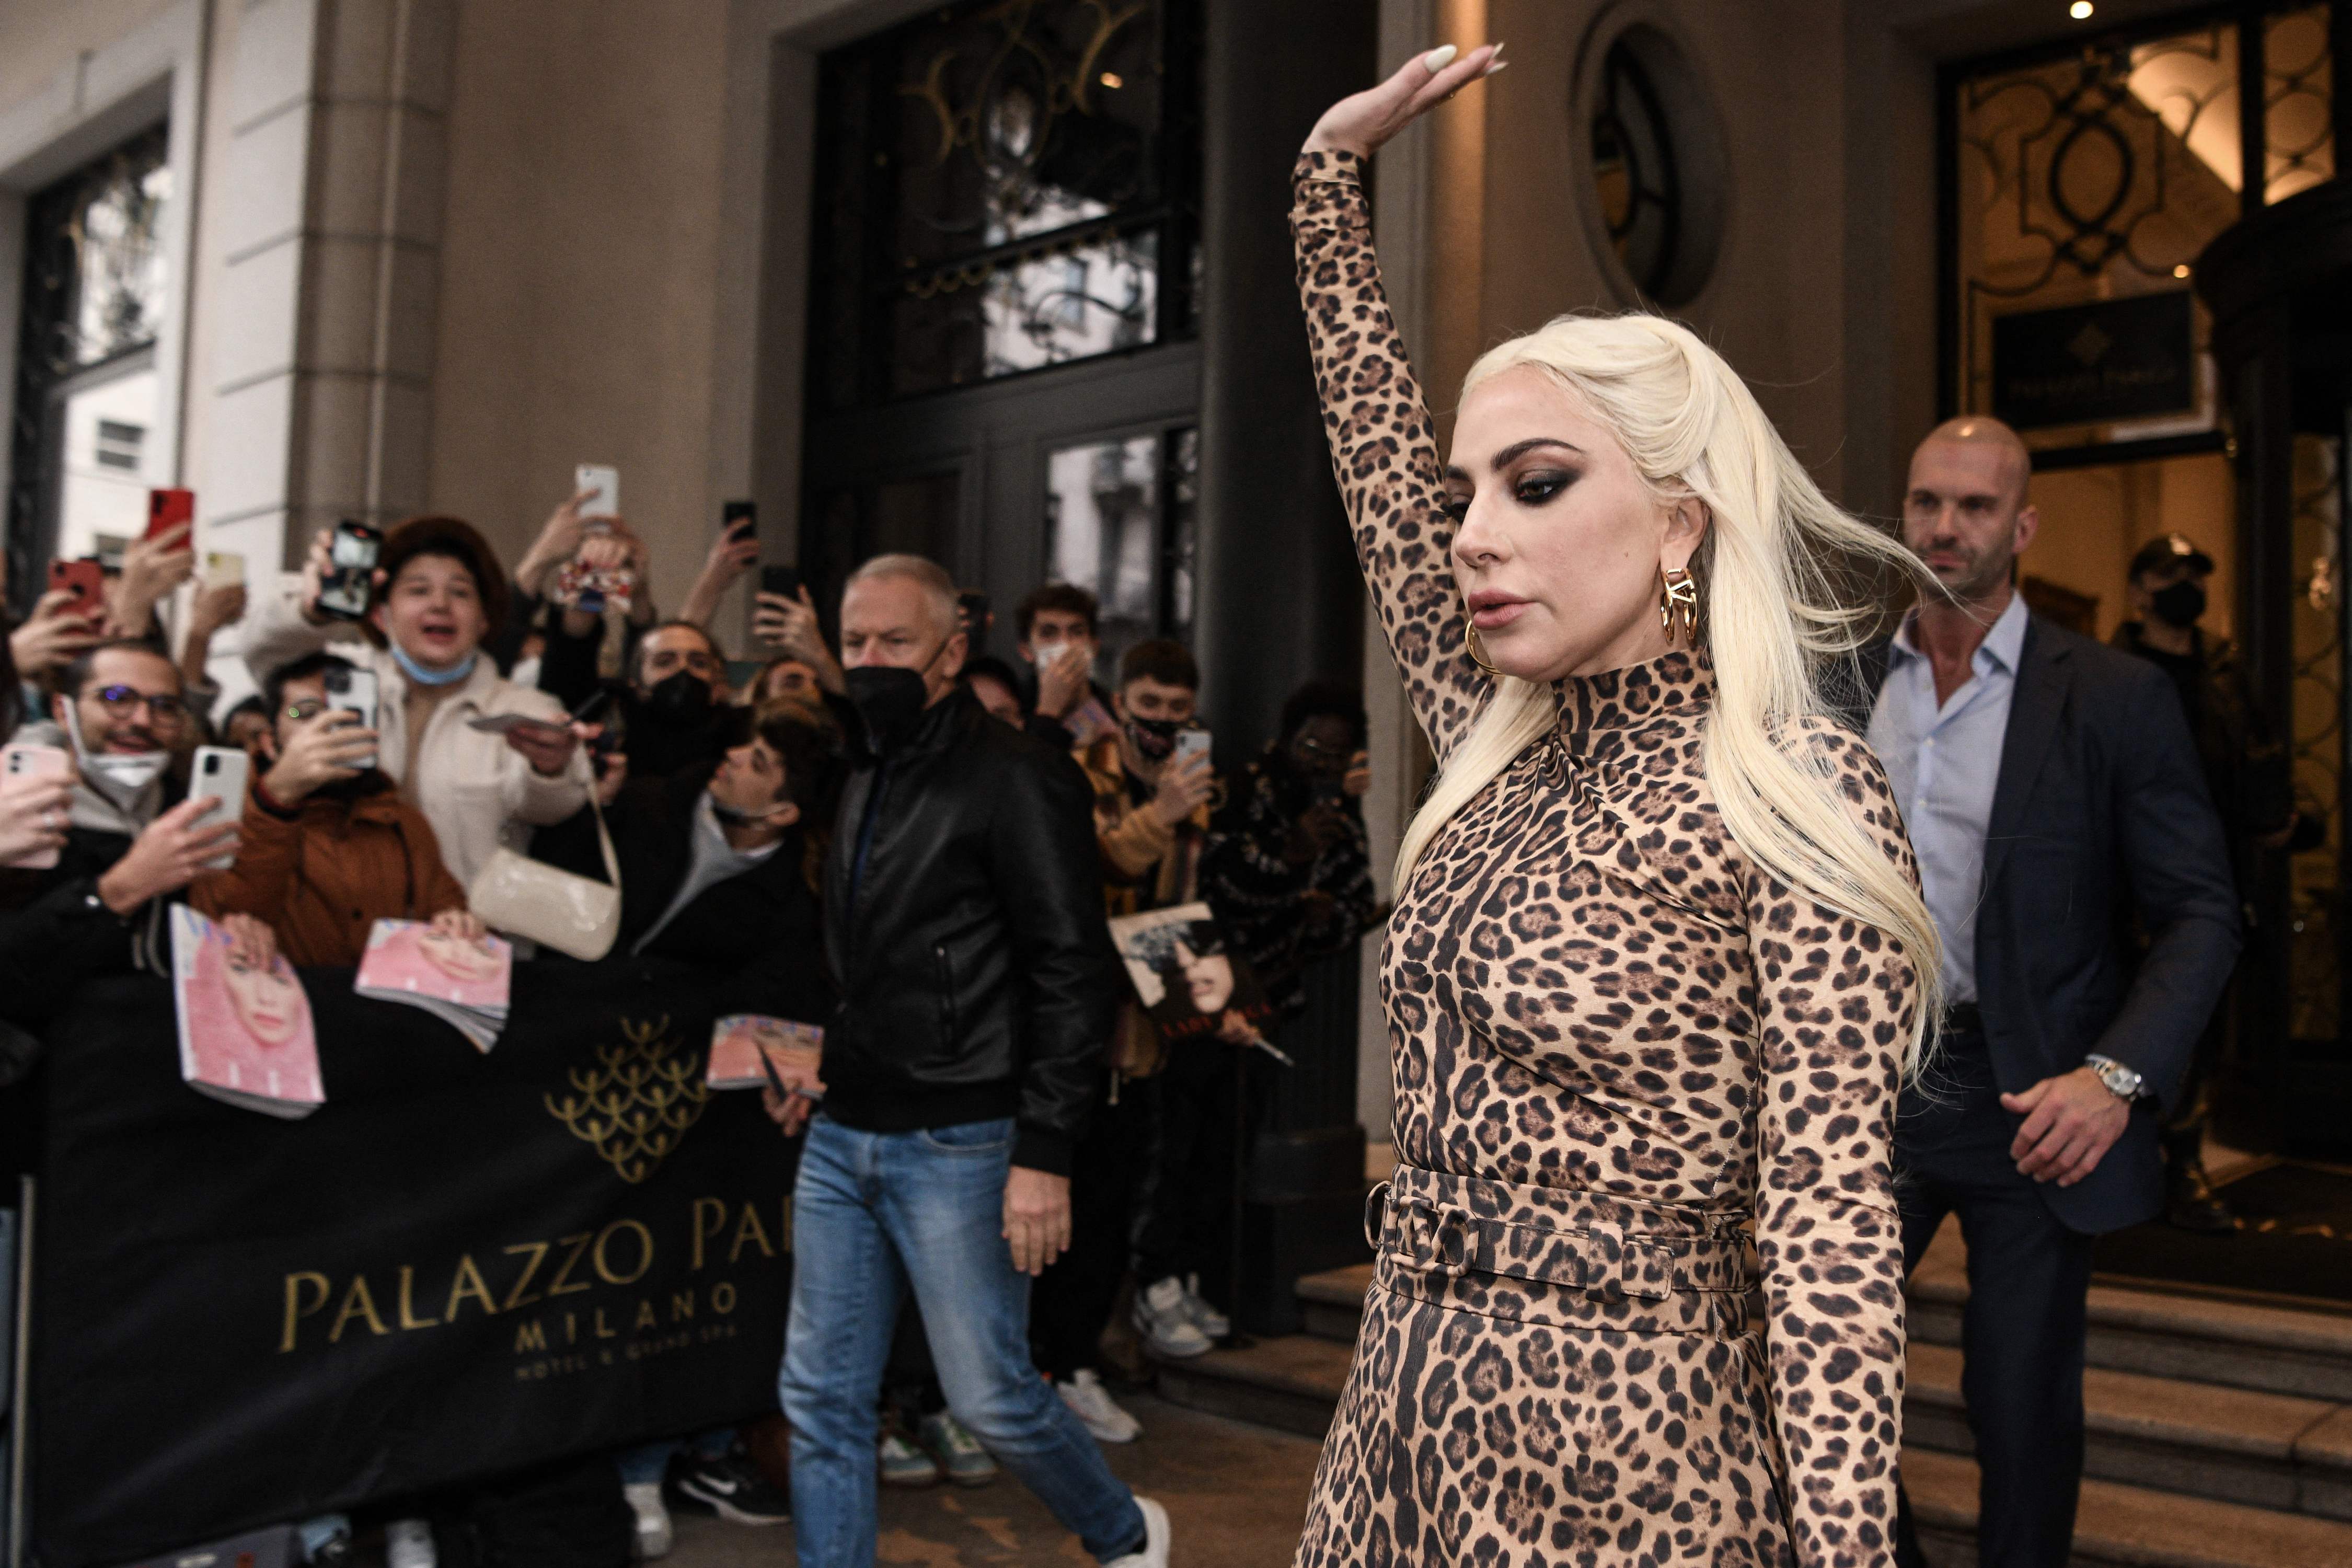 Lady Gaga a las mujeres: si creéis que no contáis, aguantad y sed íntegras